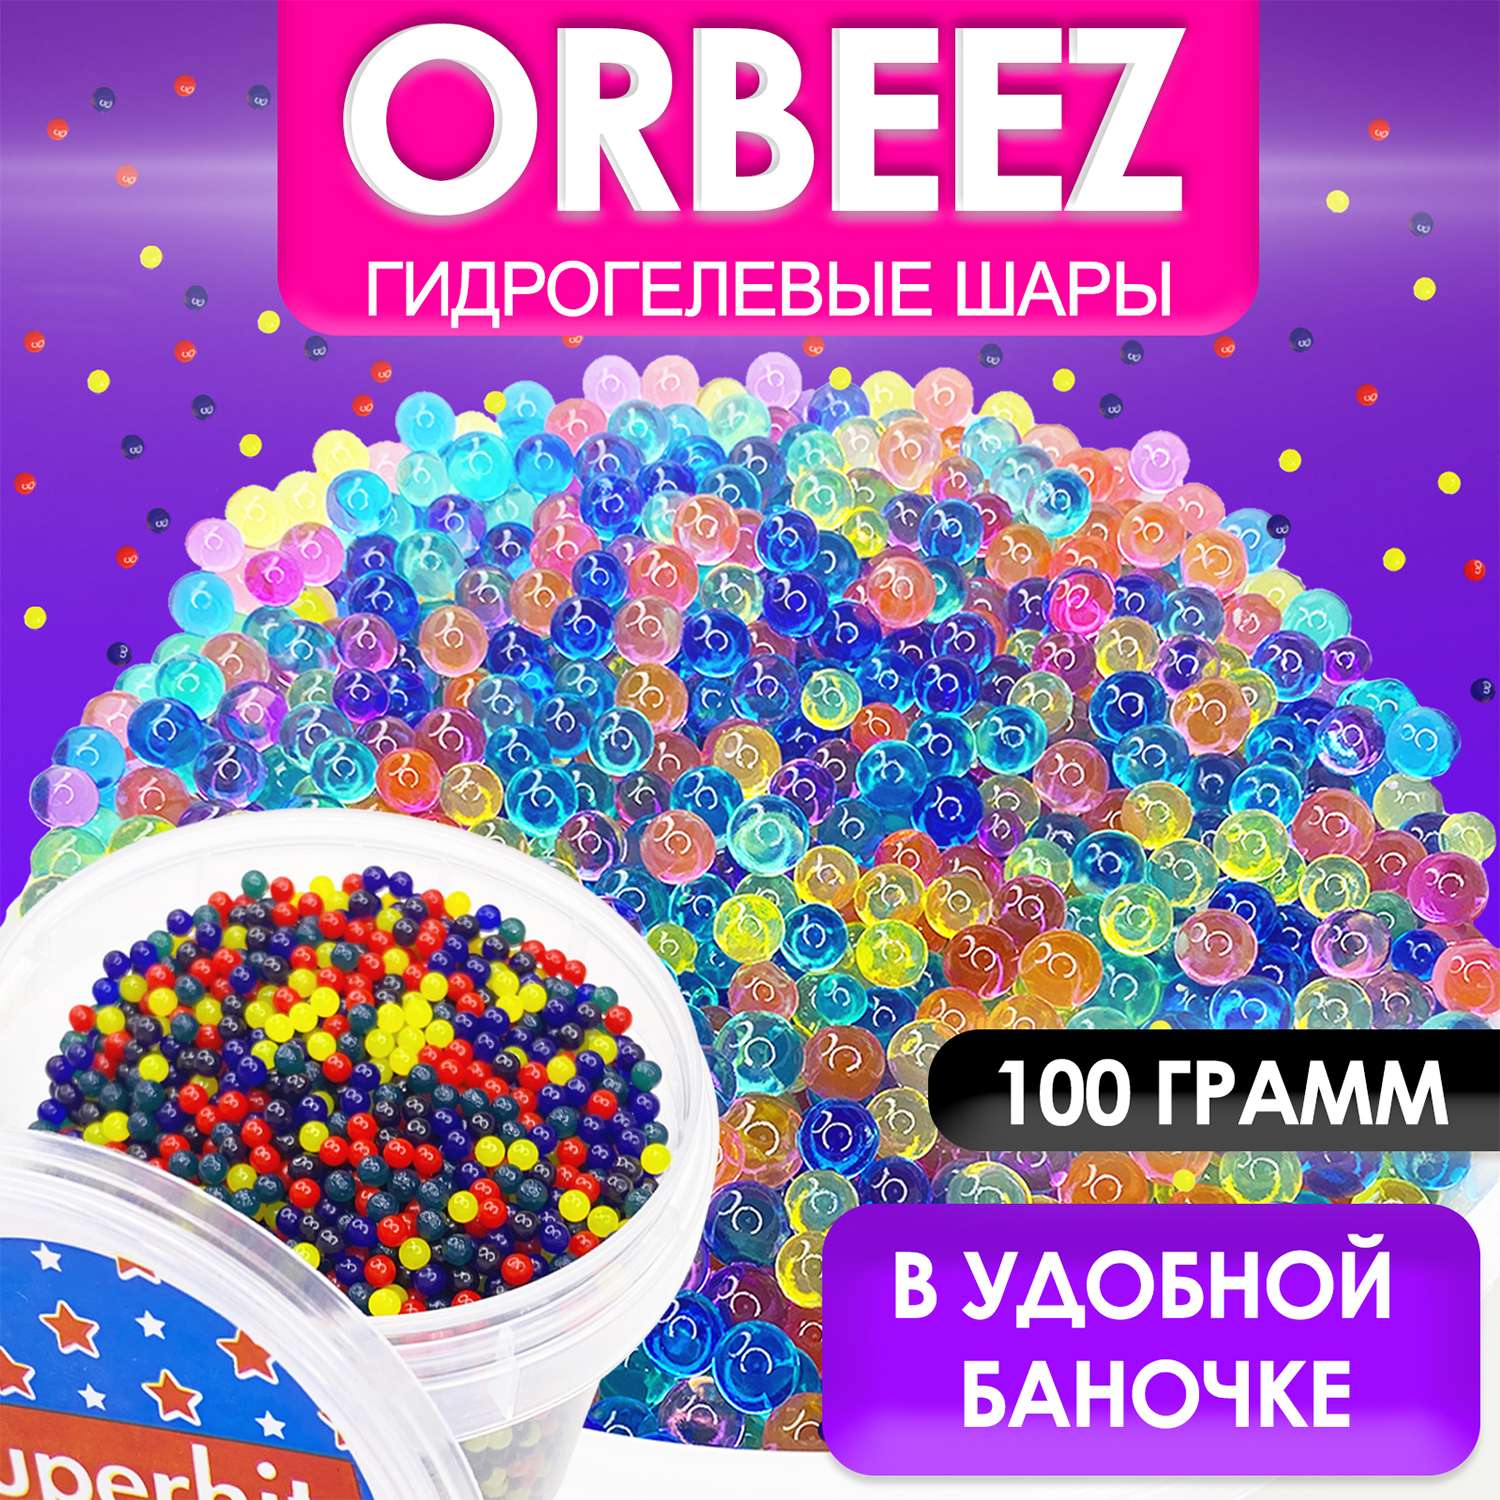 Орбизы разноцветные для детей MINI-TOYS Гидрогелевые шарики Orbeez 100 грамм - фото 1